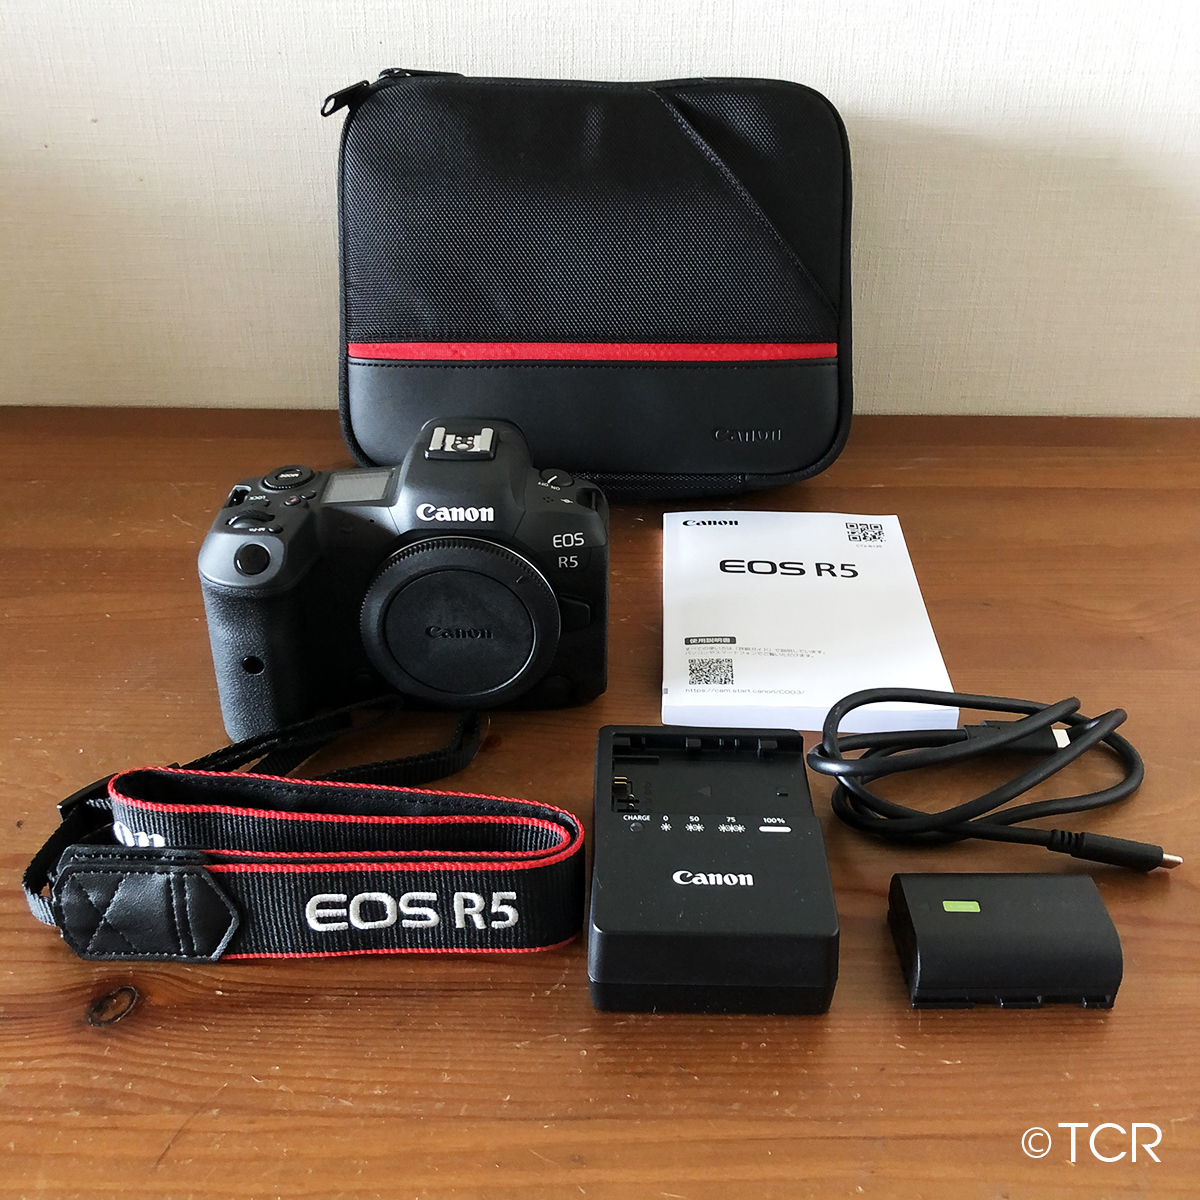 [ скидка за ранний заказ предварительный заказ ограничение ] доставка домой в аренду 3 день # Canon EOS R5 корпус #3,500 иен /3 день 